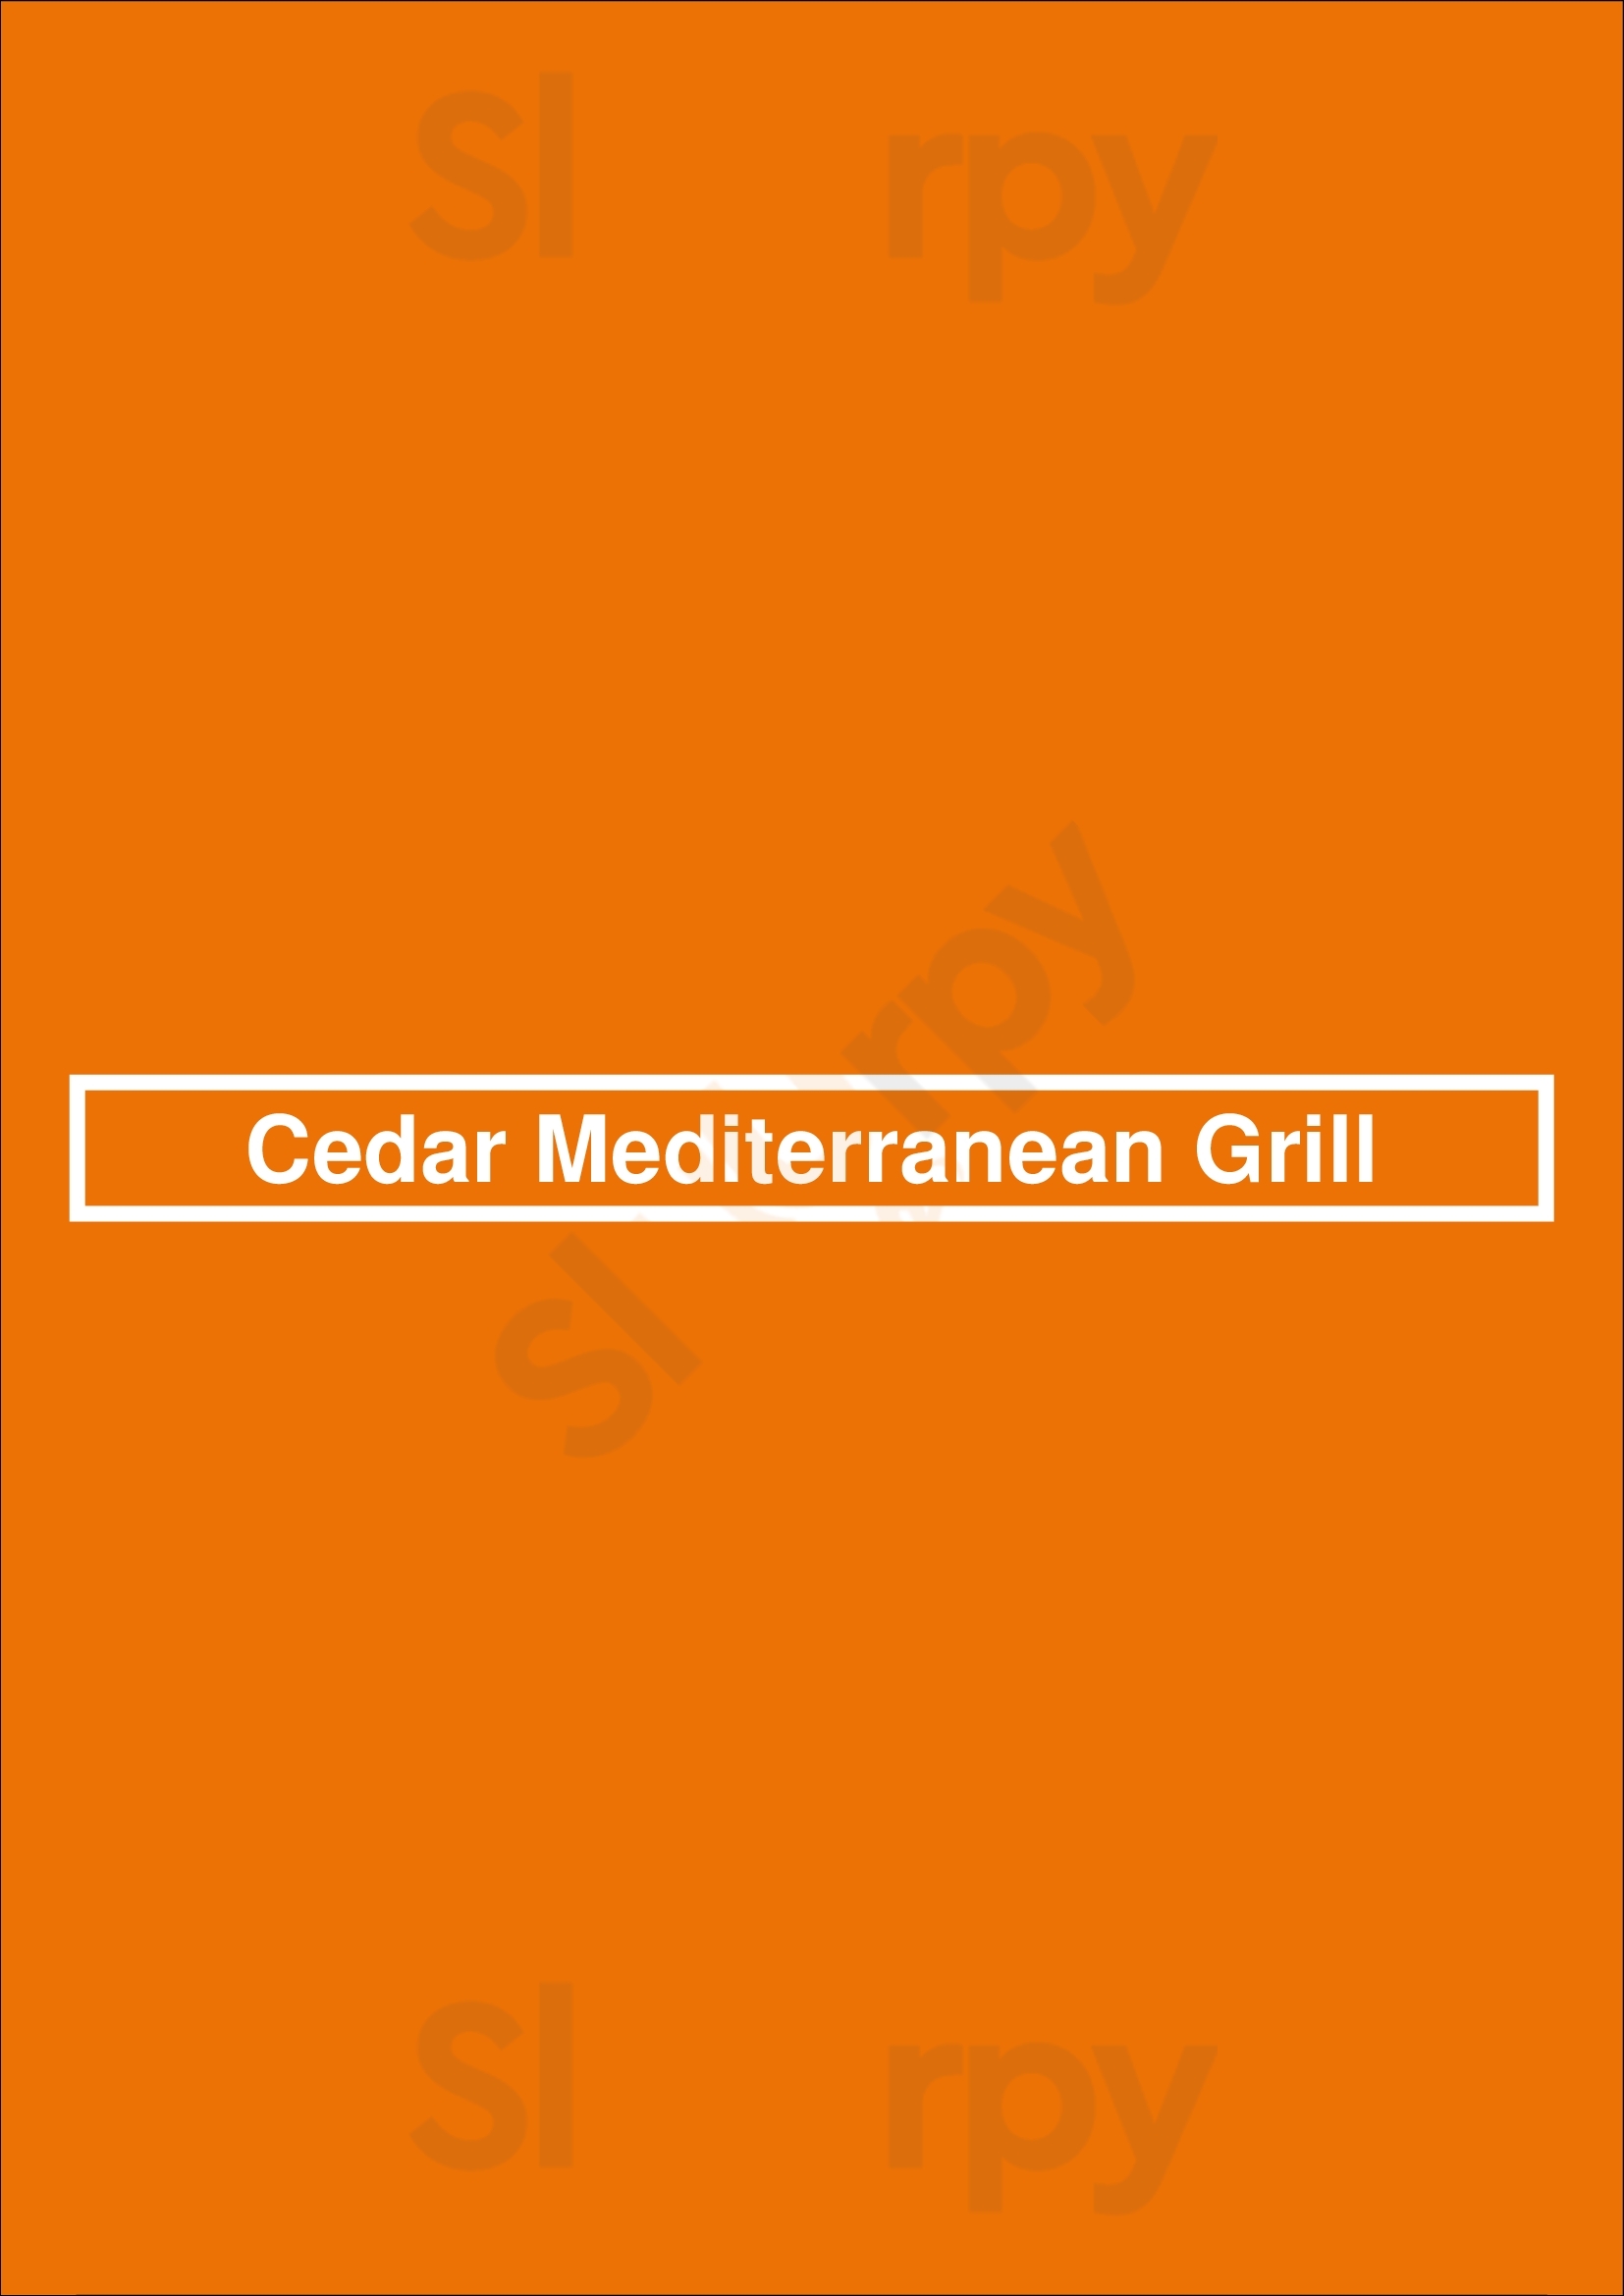 Cedar Mediterranean Grill San Antonio Menu - 1